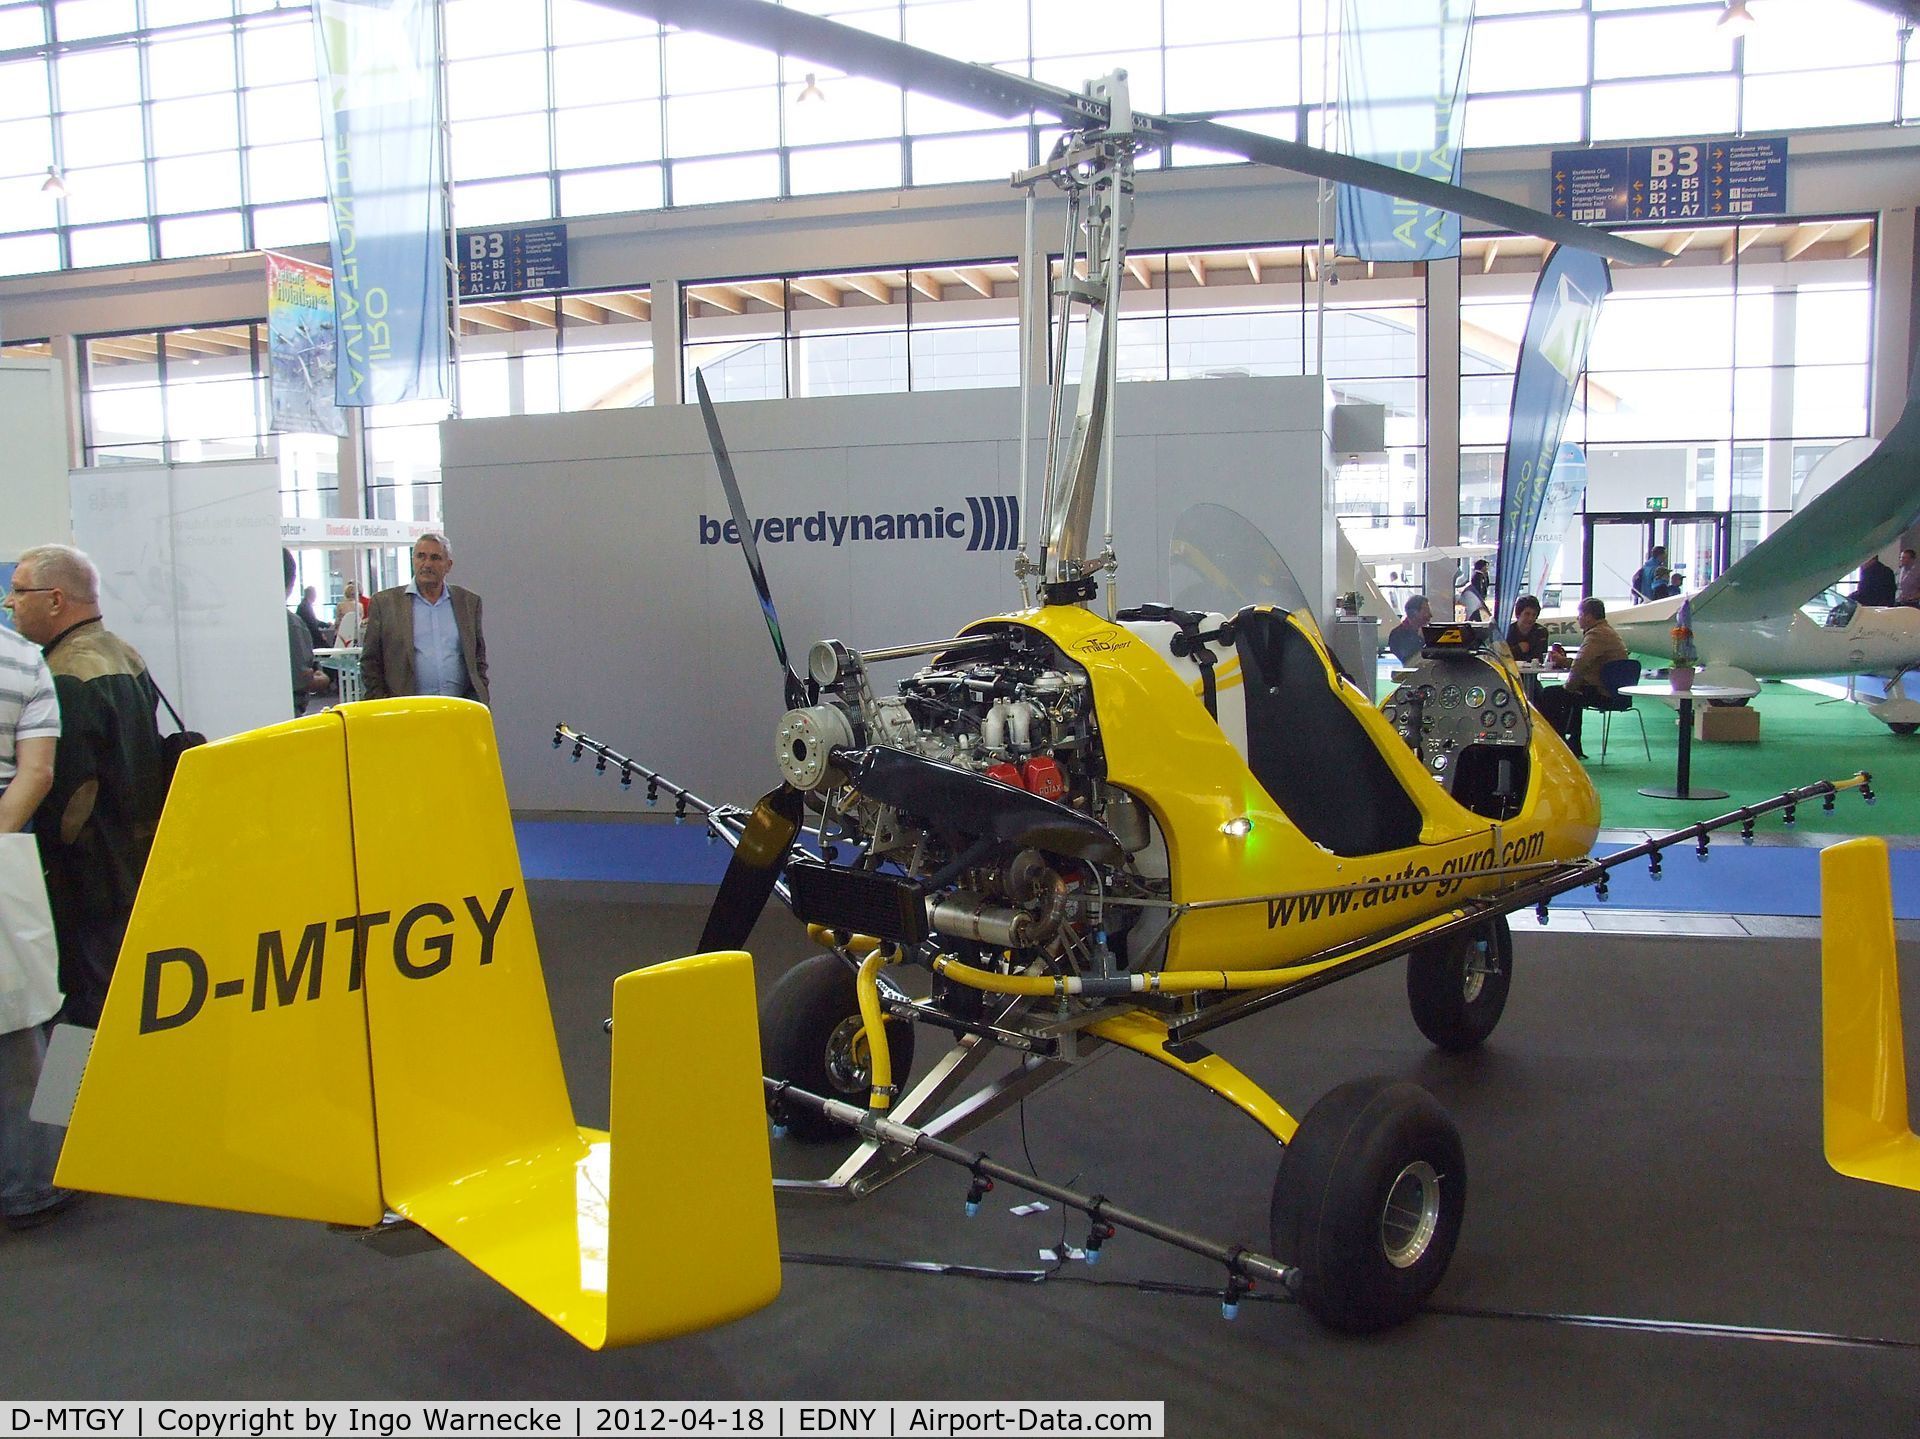 D-MTGY, AutoGyro MTOsport C/N Not found D-MTGY, AutoGyro MTOSport with spraying gear at the AERO 2012, Friedrichshafen